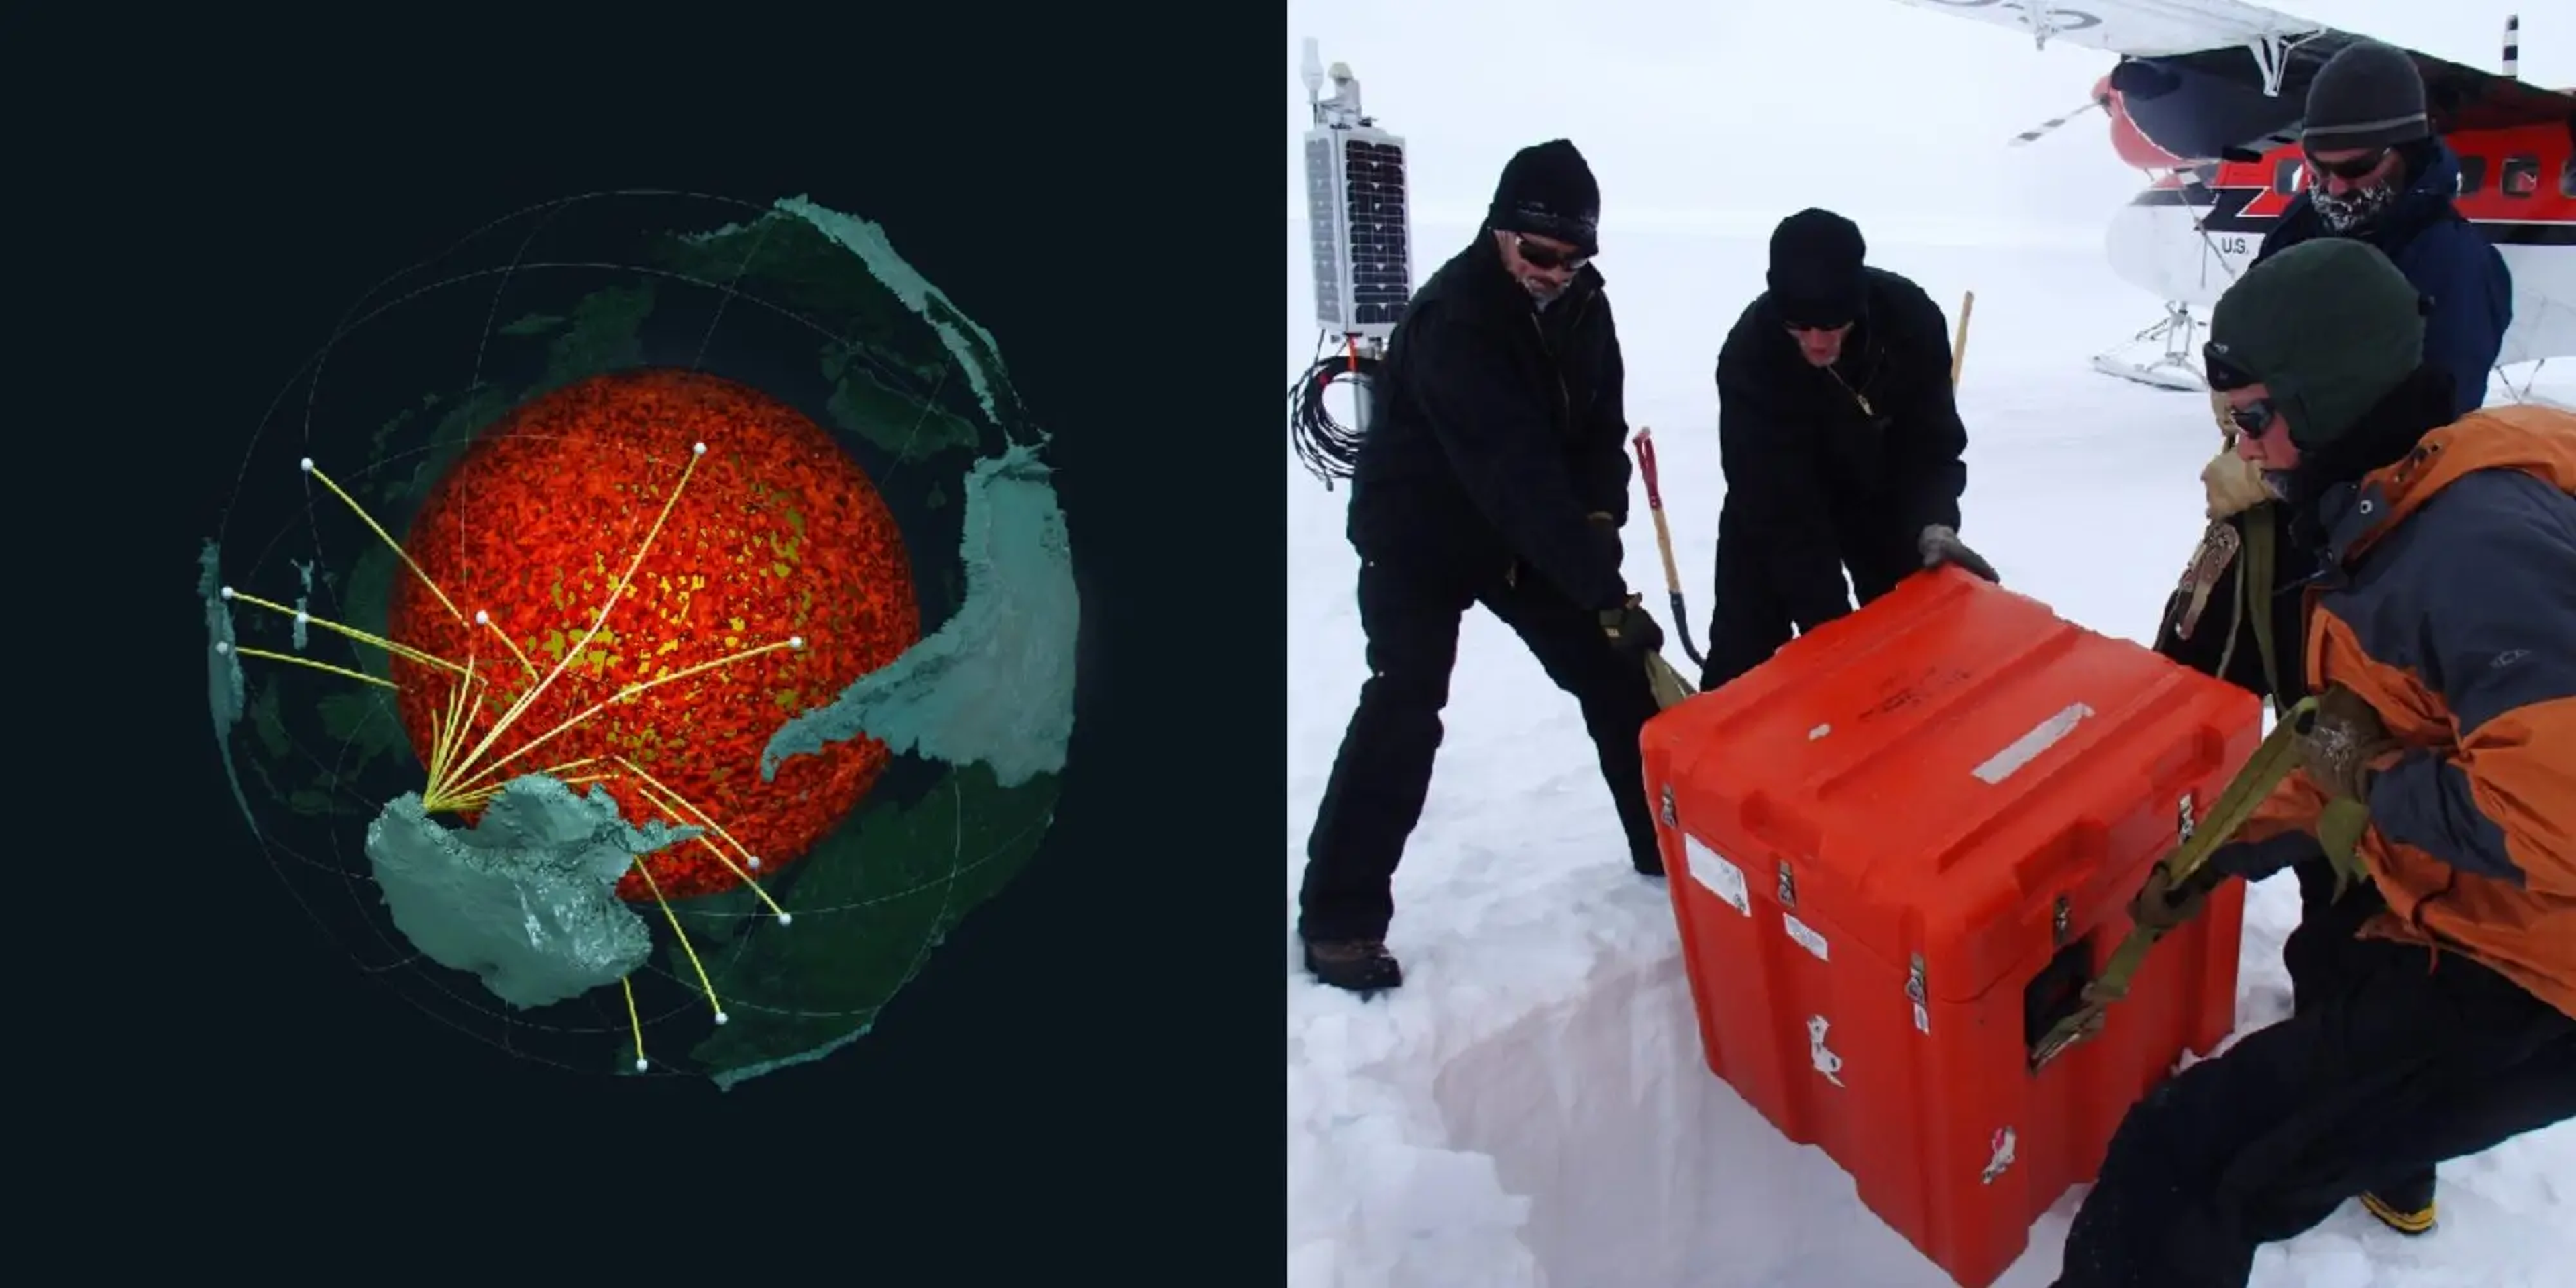 Junto a una imagen de científicos colocando equipos sísmicos en la Antártida aparece una ilustración conceptual del aspecto que tendría la estructura alrededor del núcleo.